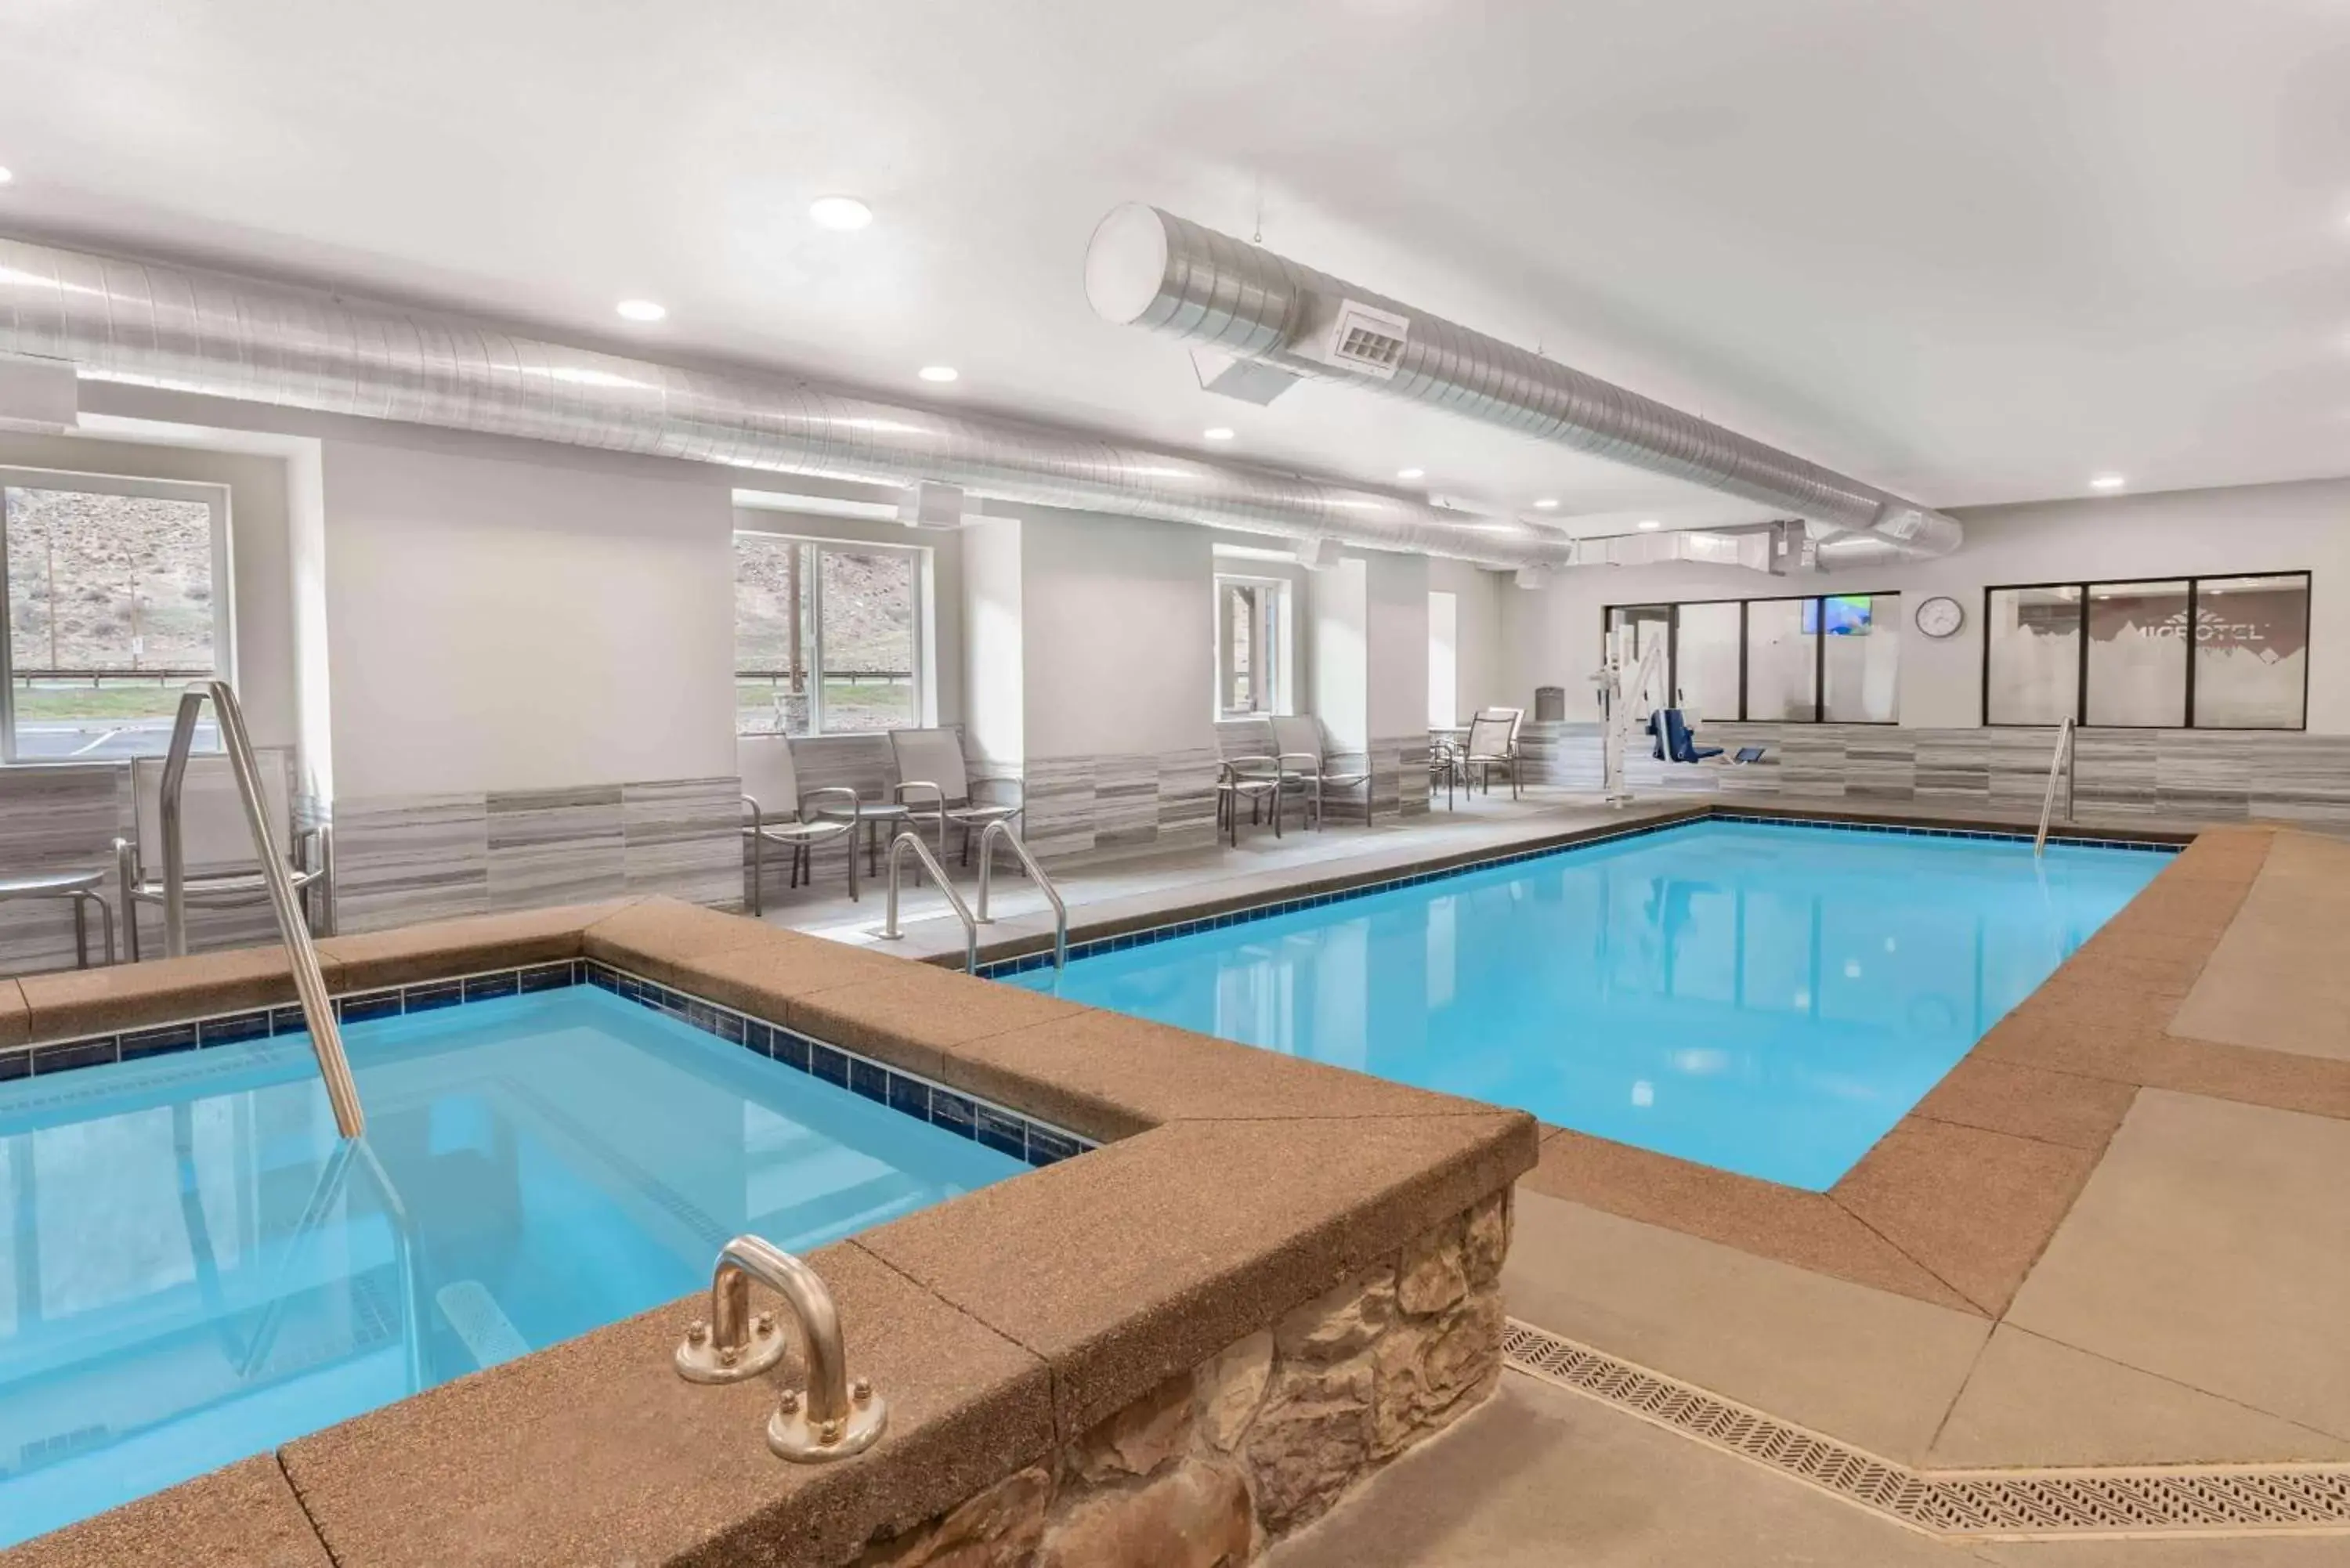 Activities, Swimming Pool in Microtel Inn & Suites by Wyndham Georgetown Lake